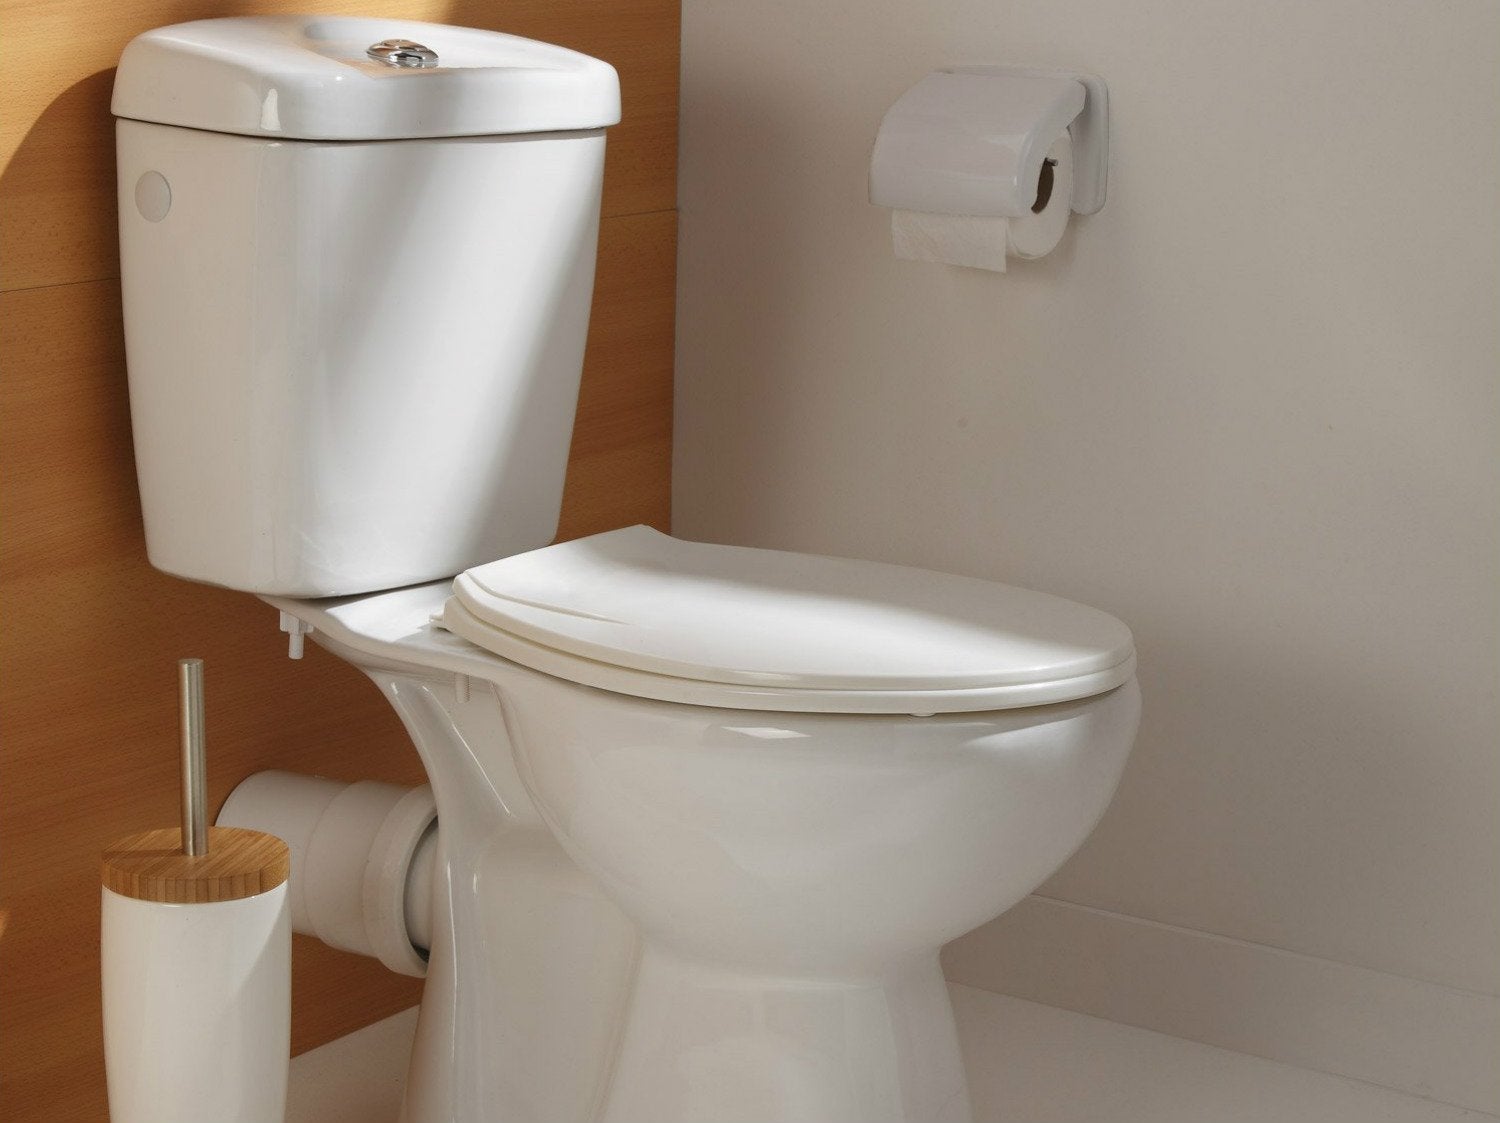 dépannage fuite wc bricolage en videos gratuites plomberie Joint